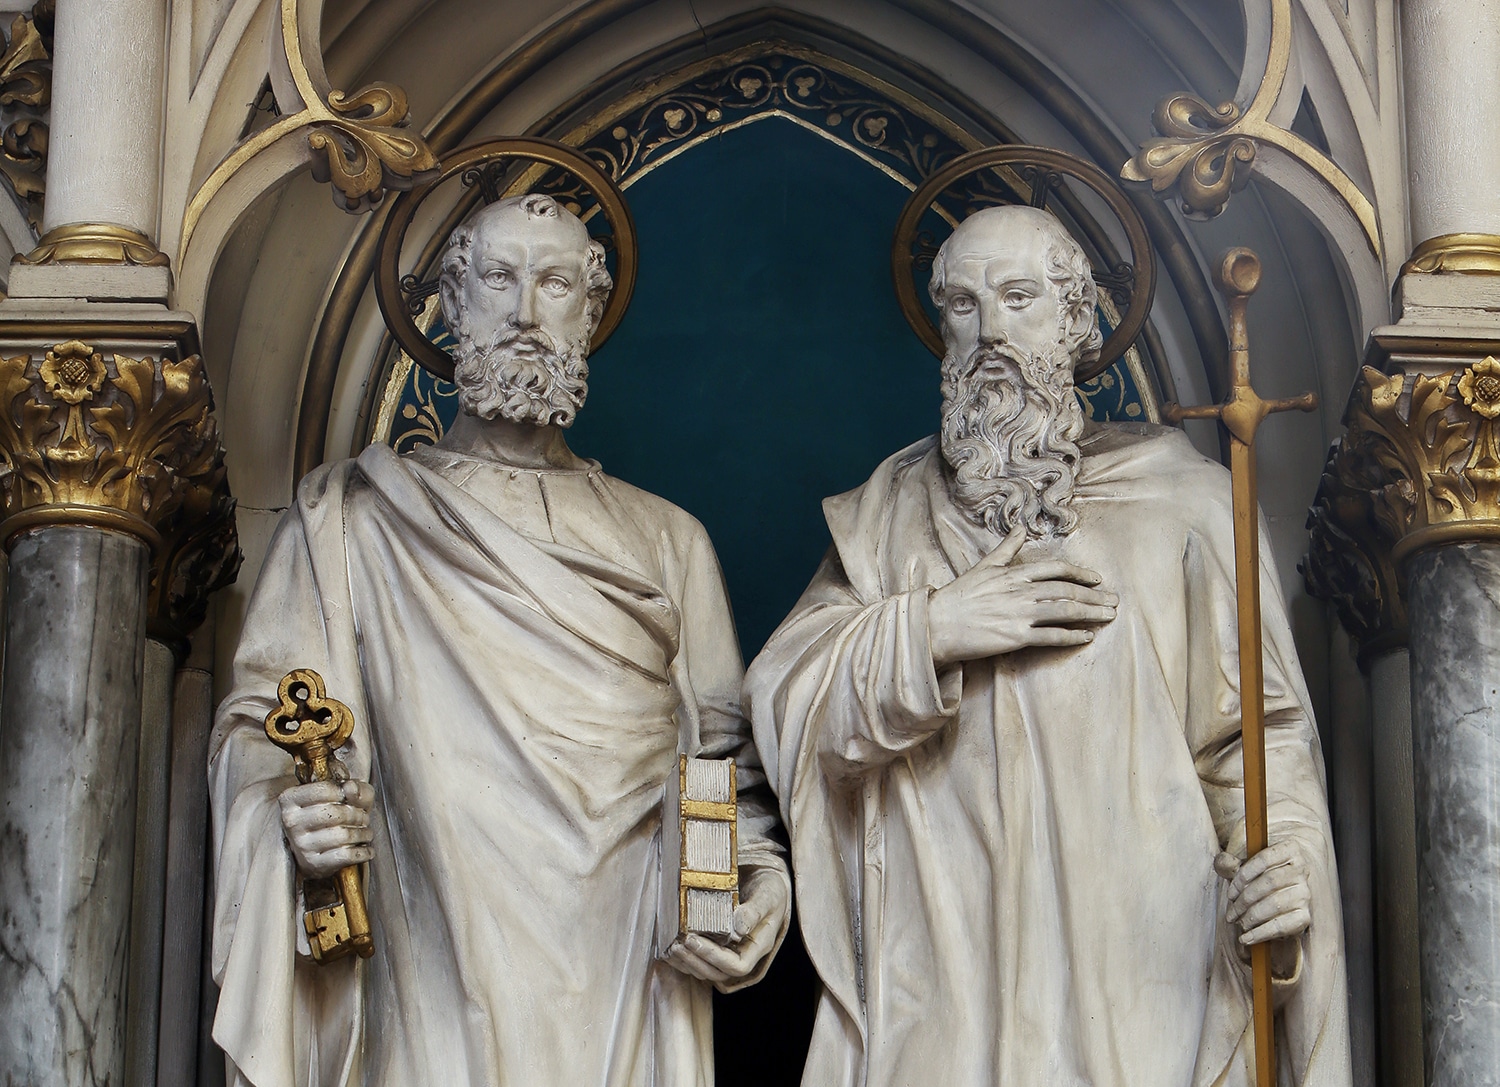 A granite statue of saints Peter and Paul, apostles